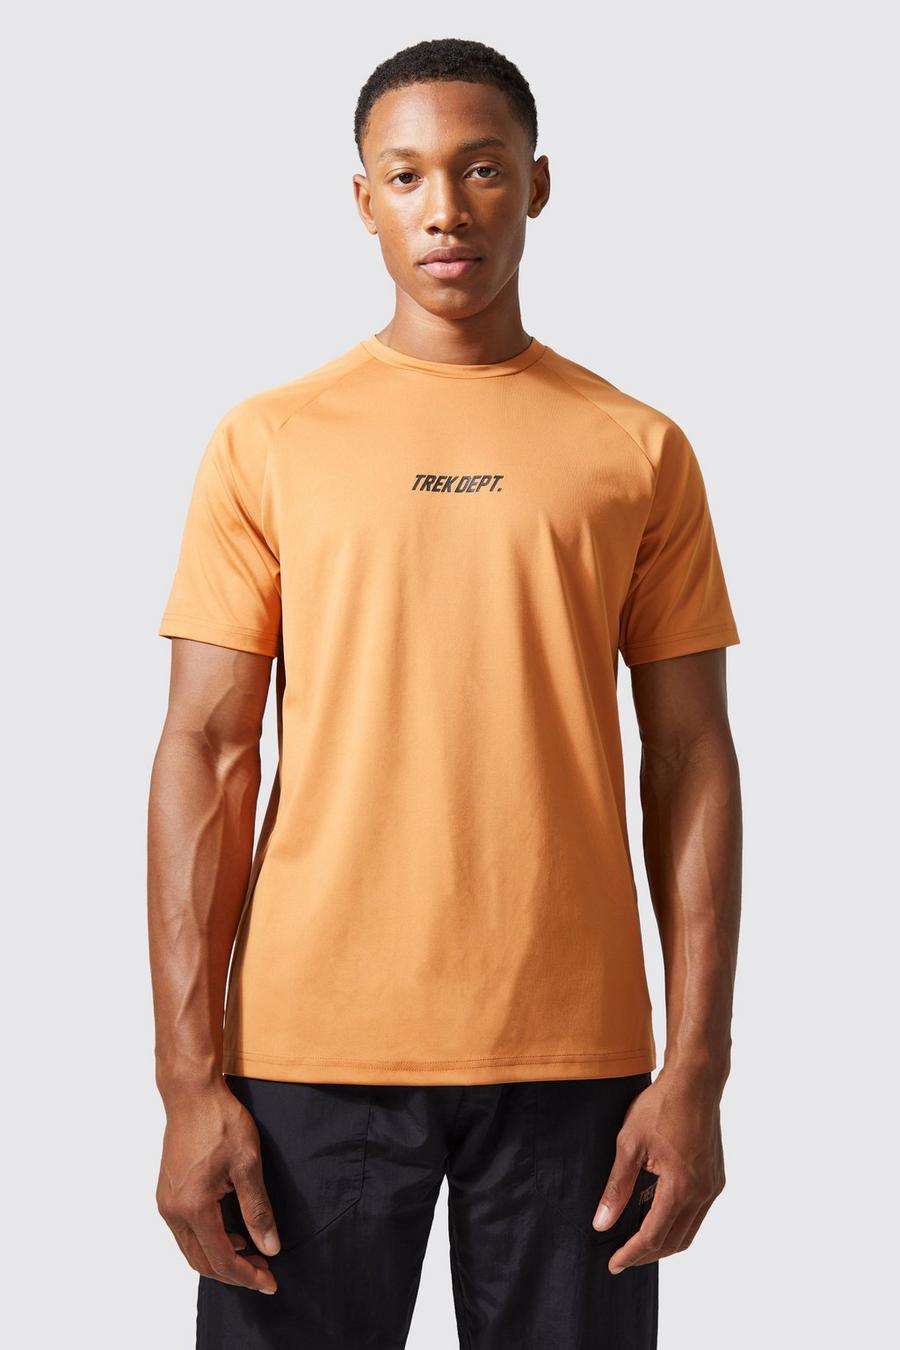 Camiseta Active resistente de Trek, Burnt orange